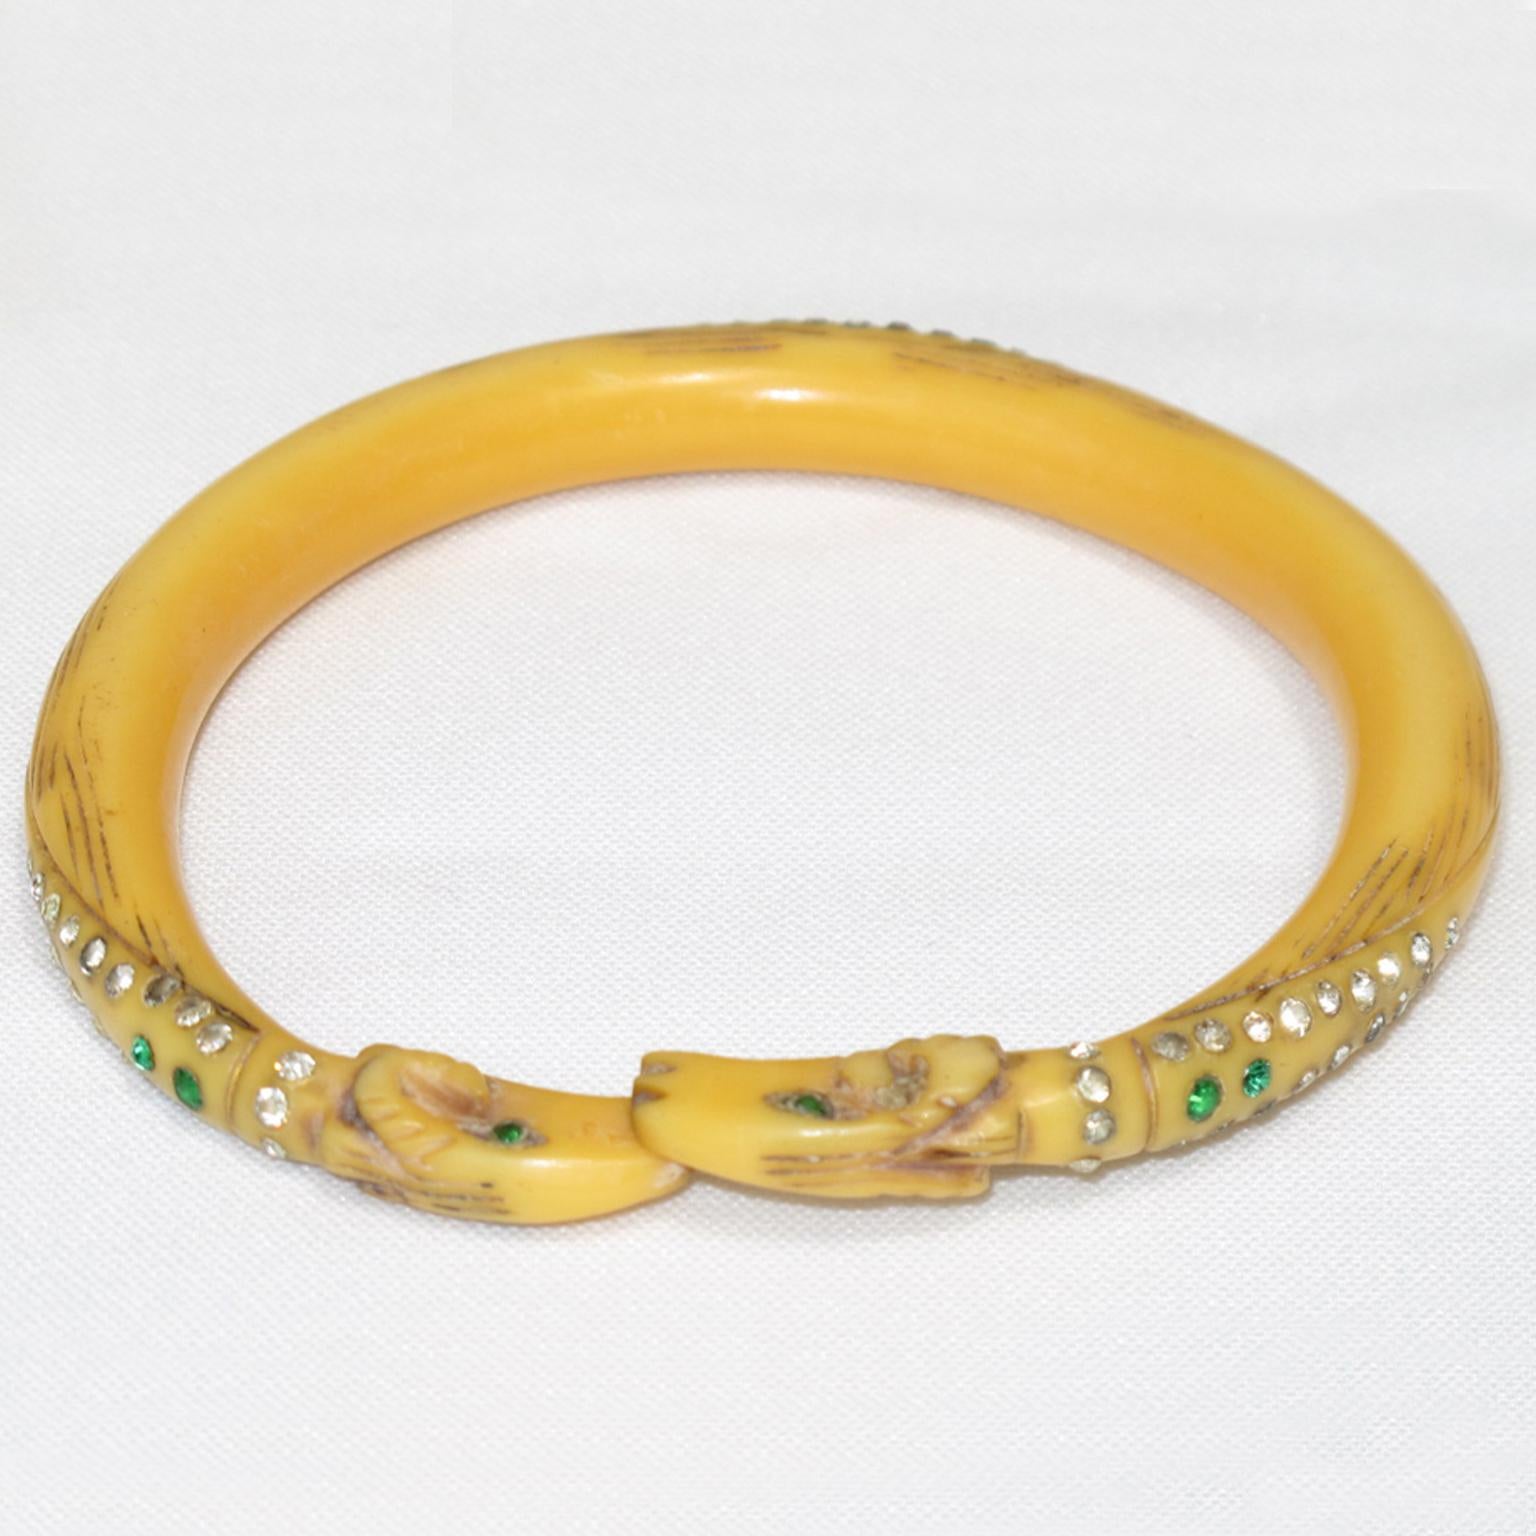 Il s'agit d'un rare et charmant bracelet en Celluloïd Art Nouveau fabriqué en France dans les années 1910. Le bracelet est orné d'une double tête de bélier sculptée à la main, complétée par des strass en cristal sur tout le pourtour. Le bracelet a